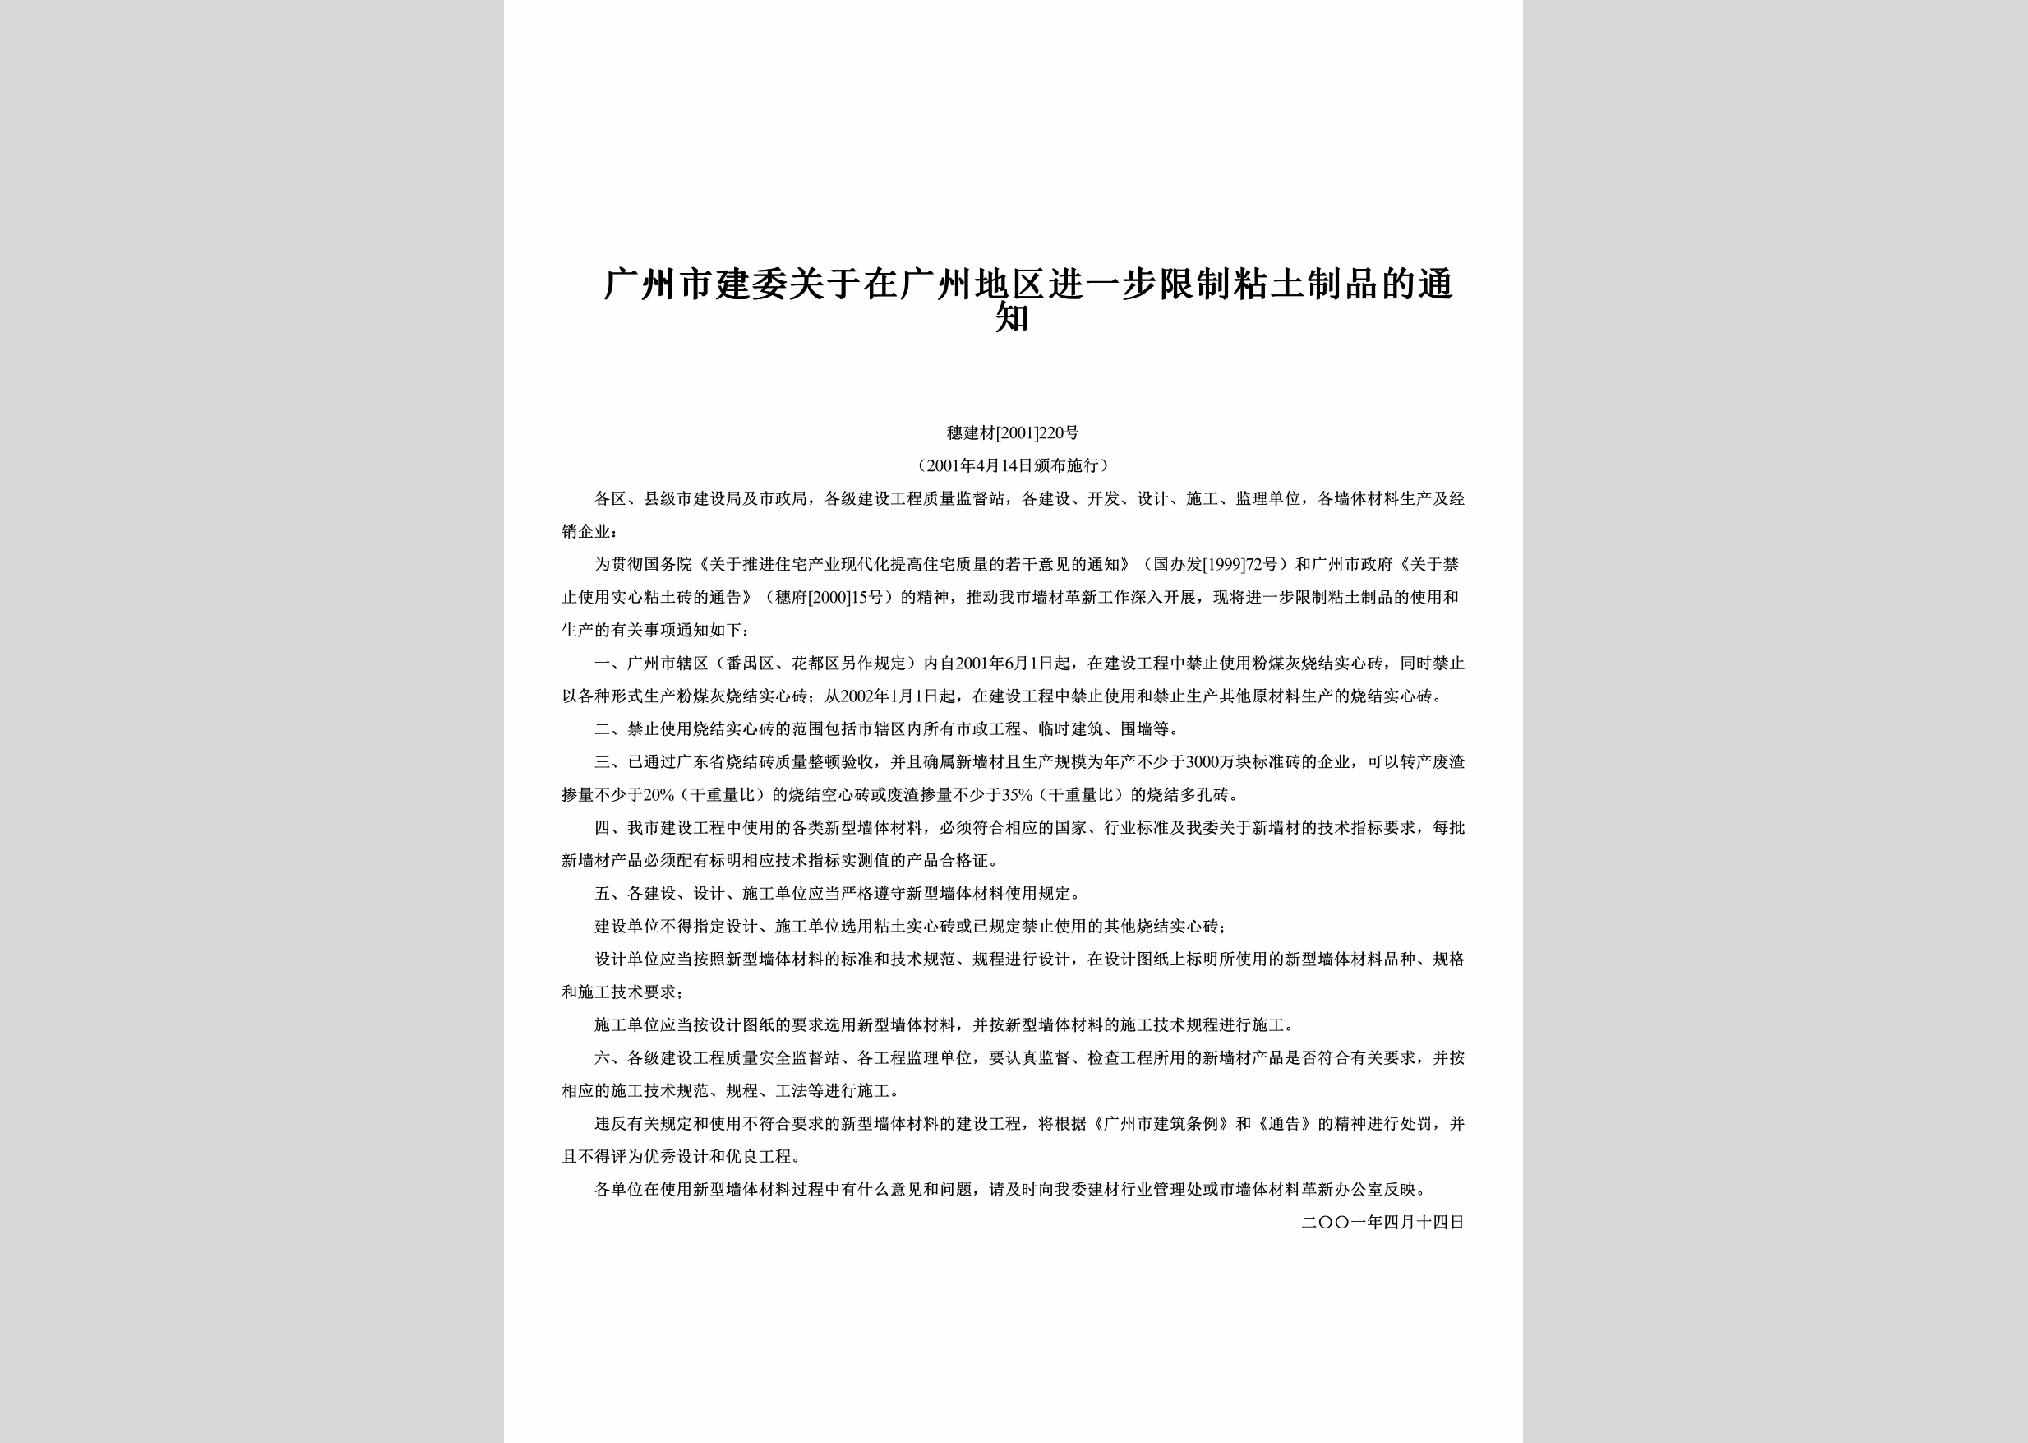 穗建材[2001]220号：关于在广州地区进一步限制粘土制品的通知